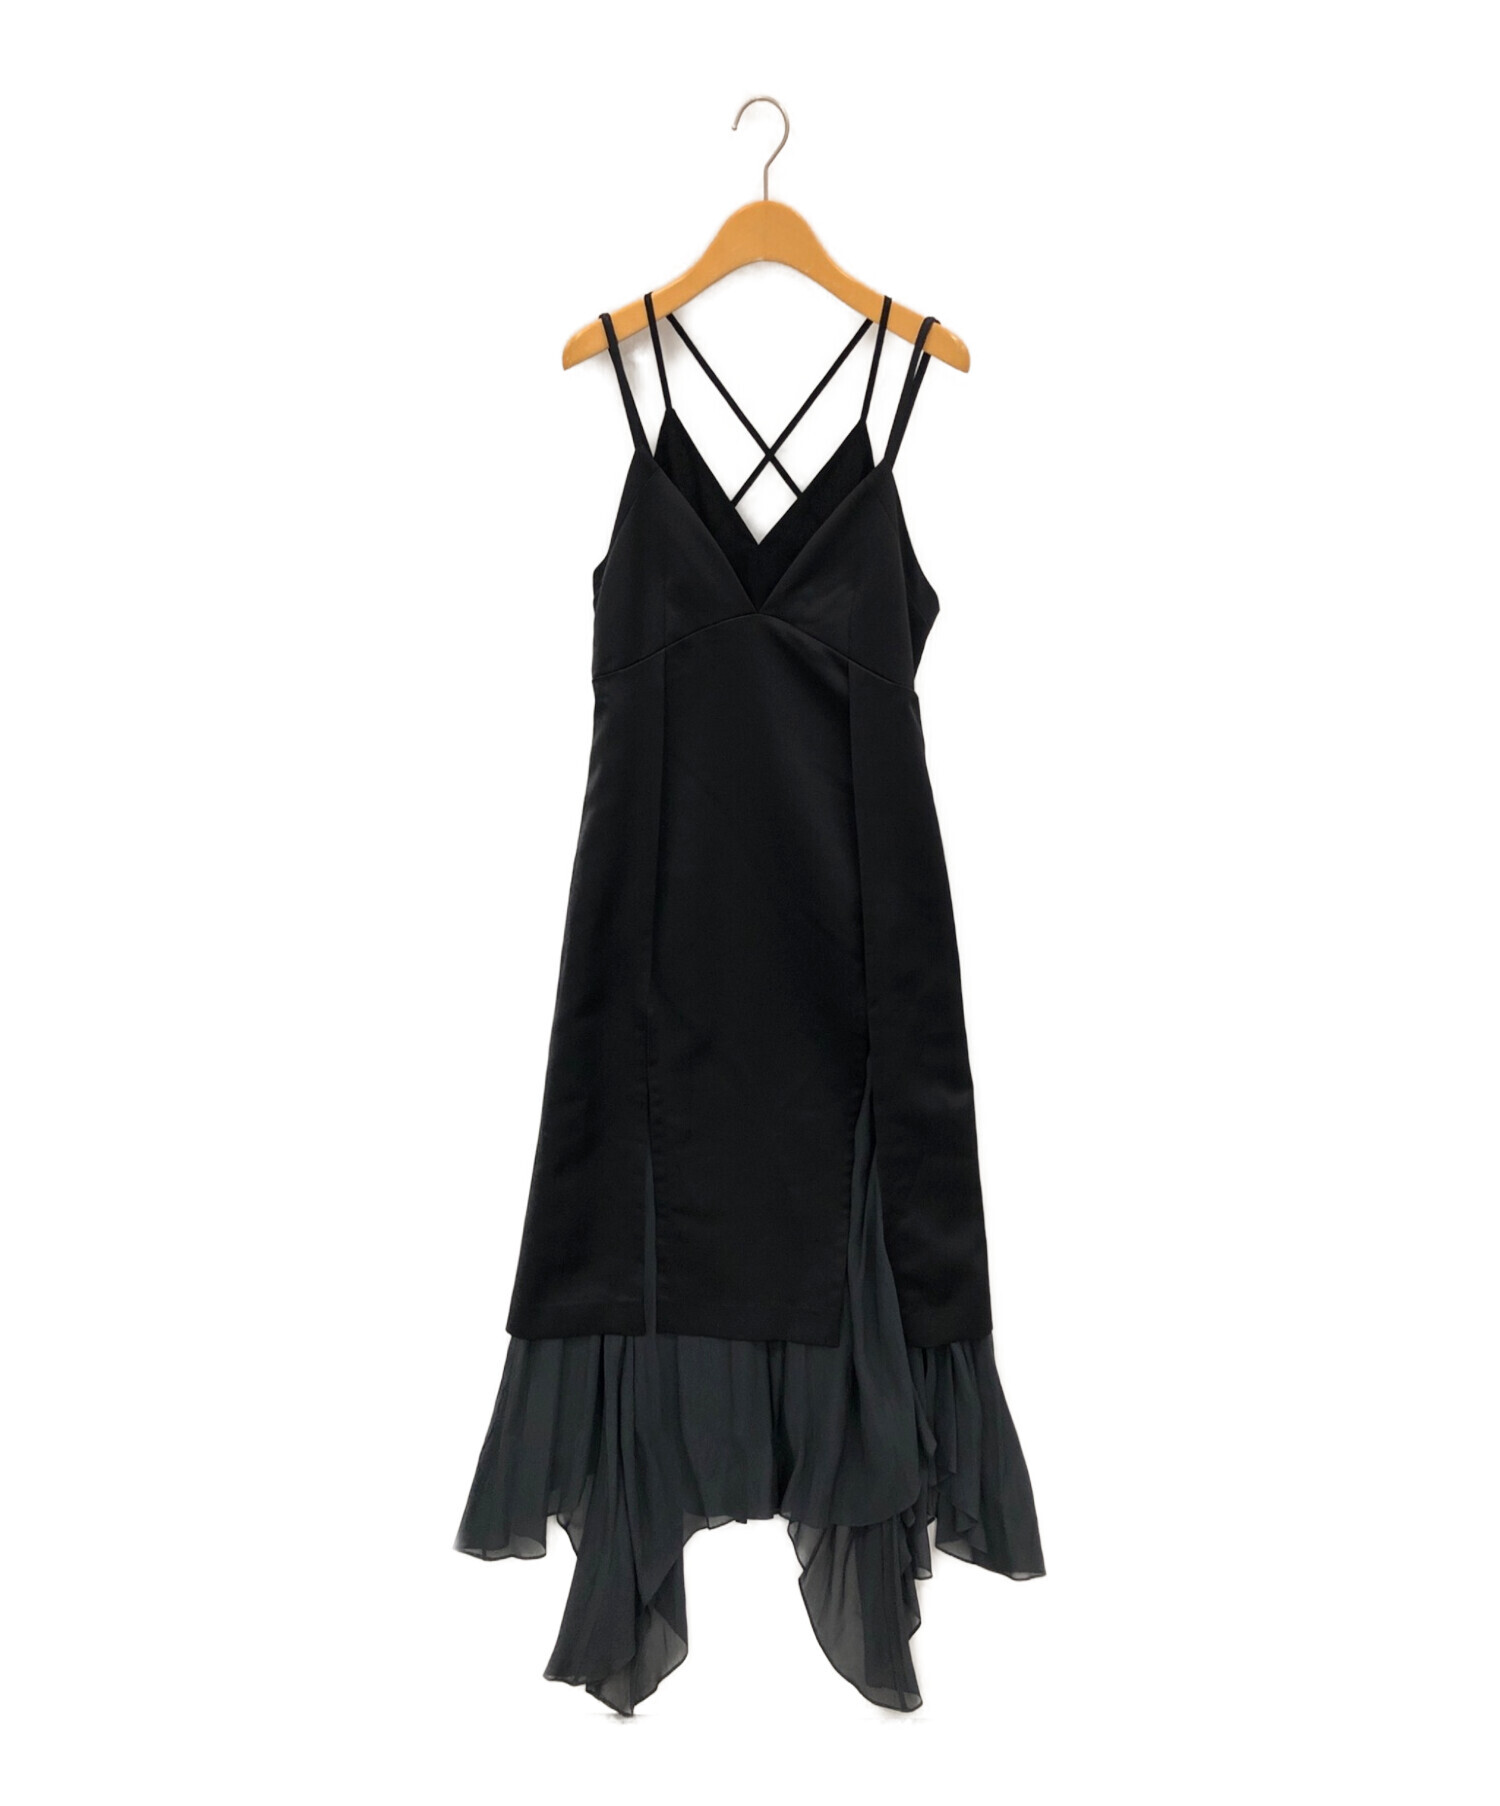 MURRAL (ミューラル) Flutters camisole dress ブラック サイズ:2